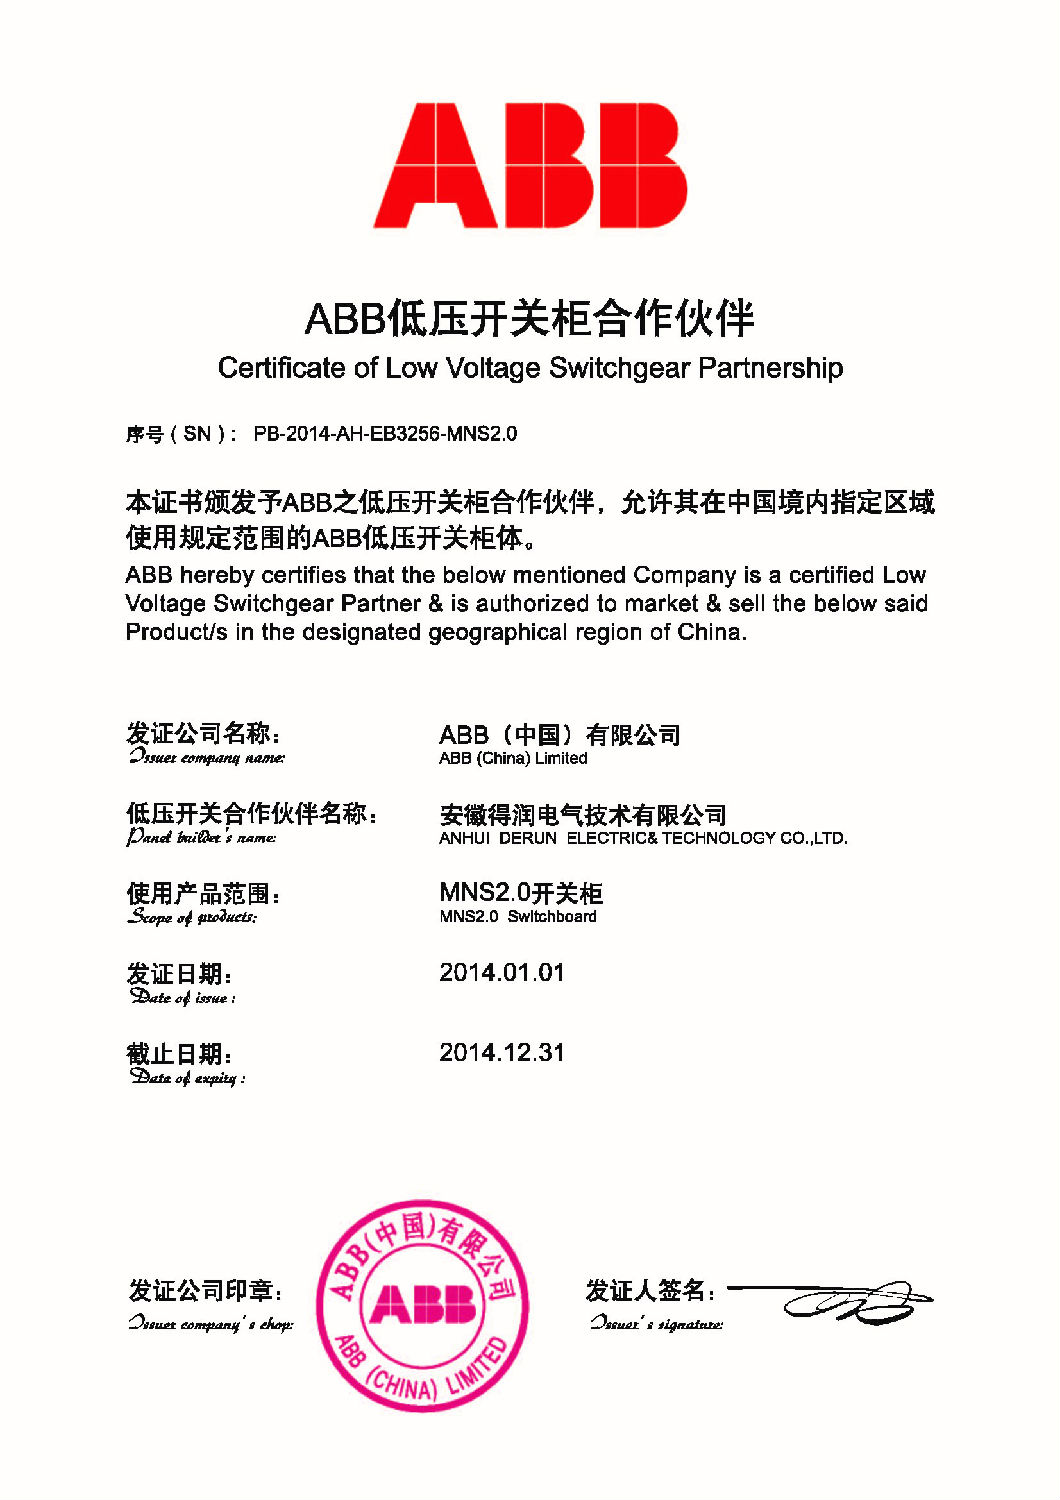 安徽得润电气技术有限公司—ABB低压开关柜合作伙伴 全国统一客服热线：400-0551-777